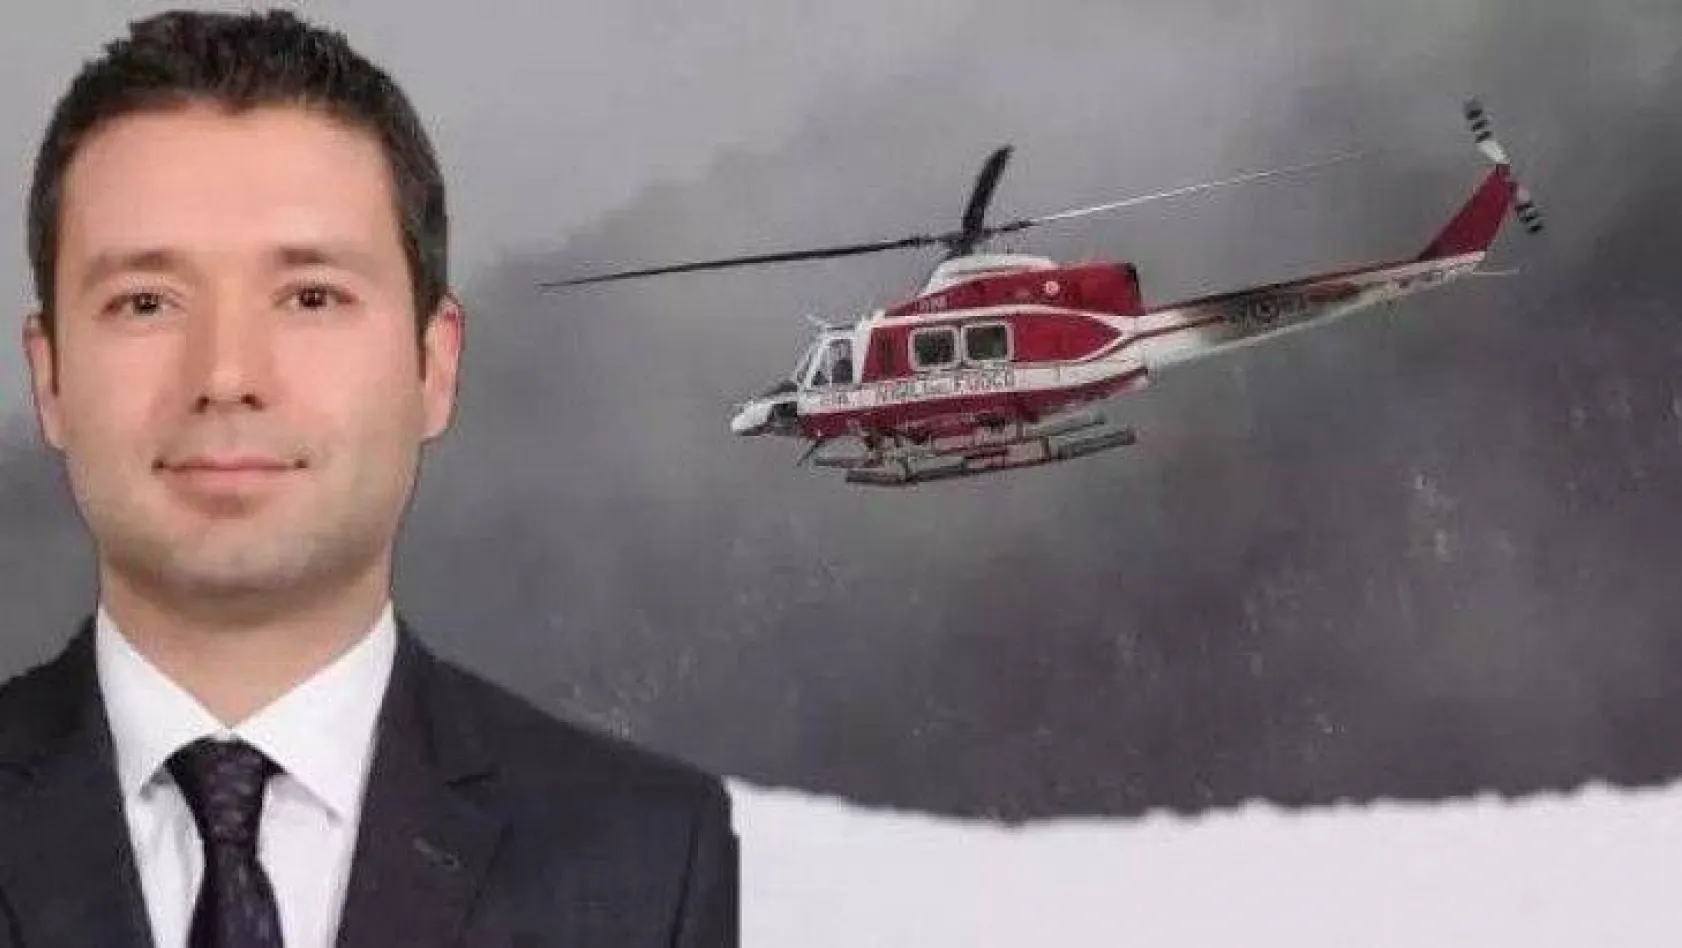 İtalya'da düşen helikopterin içinde bulunan Bursalı Arif Cez'in cenazesine ulaşıldı